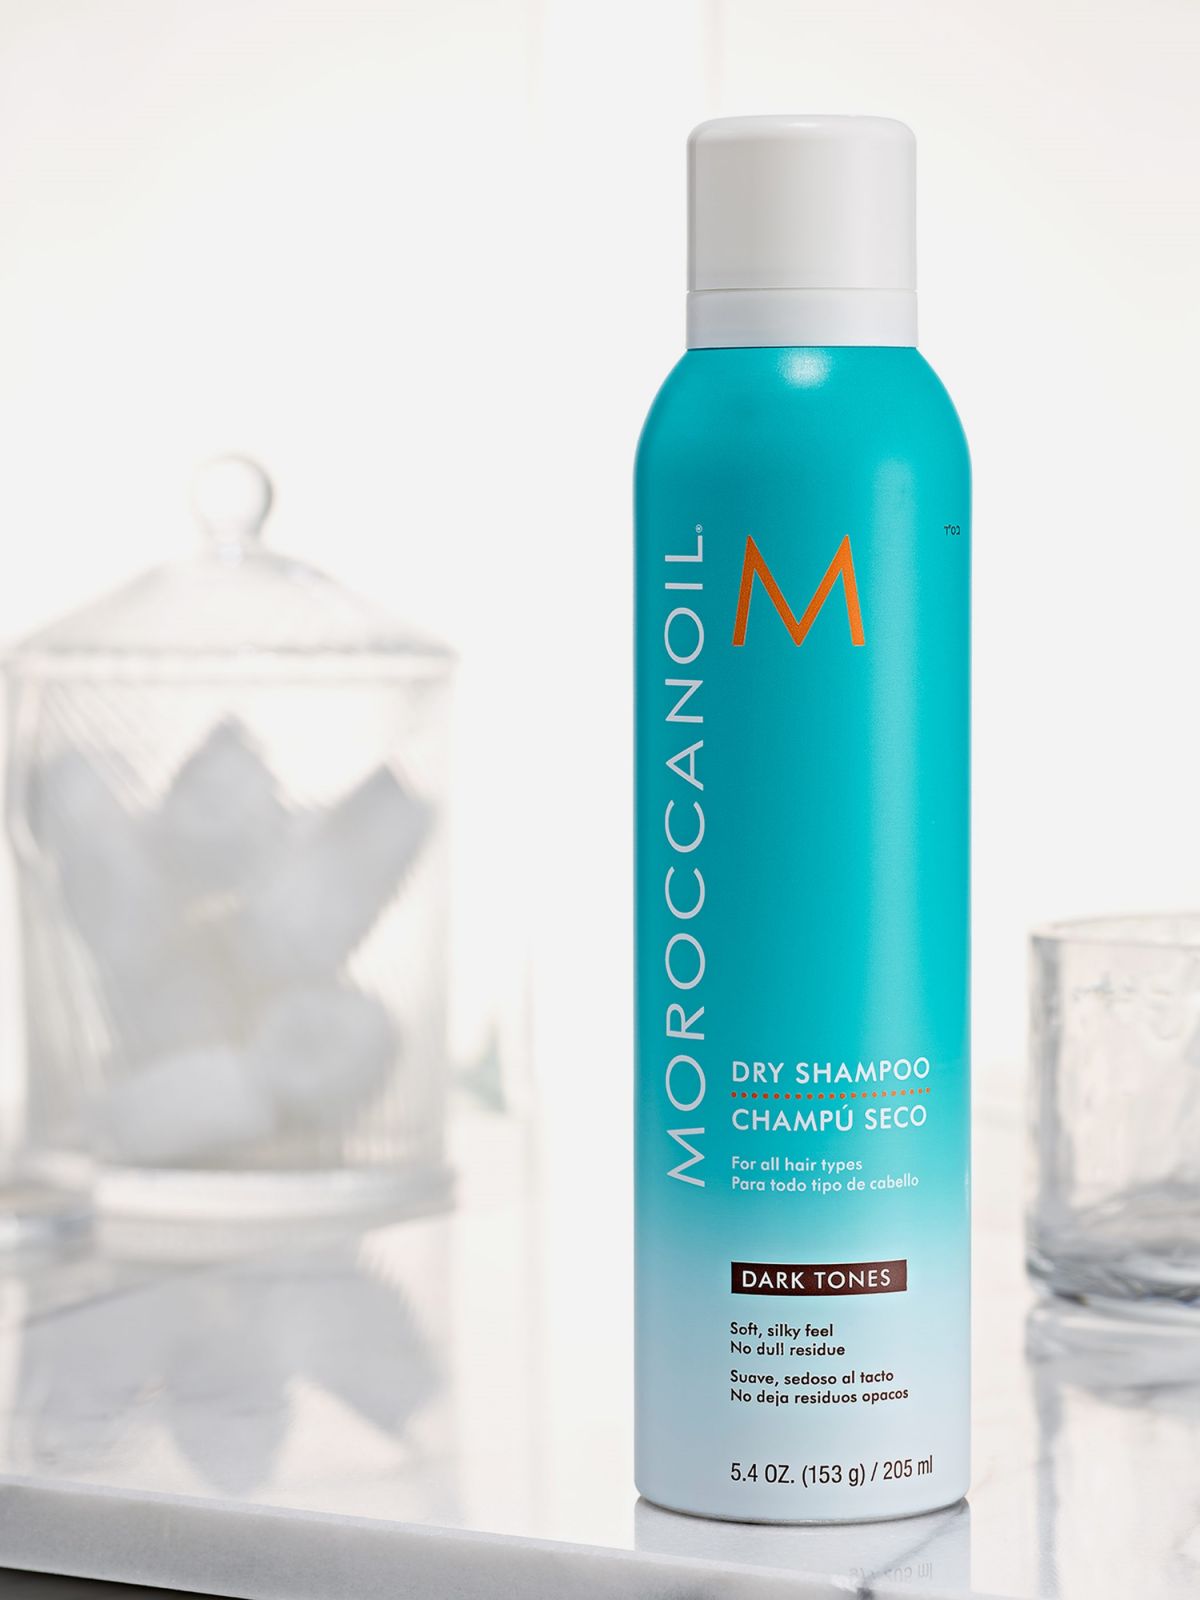  שמפו יבש לגוון שיער כהה Dry shampoo dark tones של MOROCCANOIL